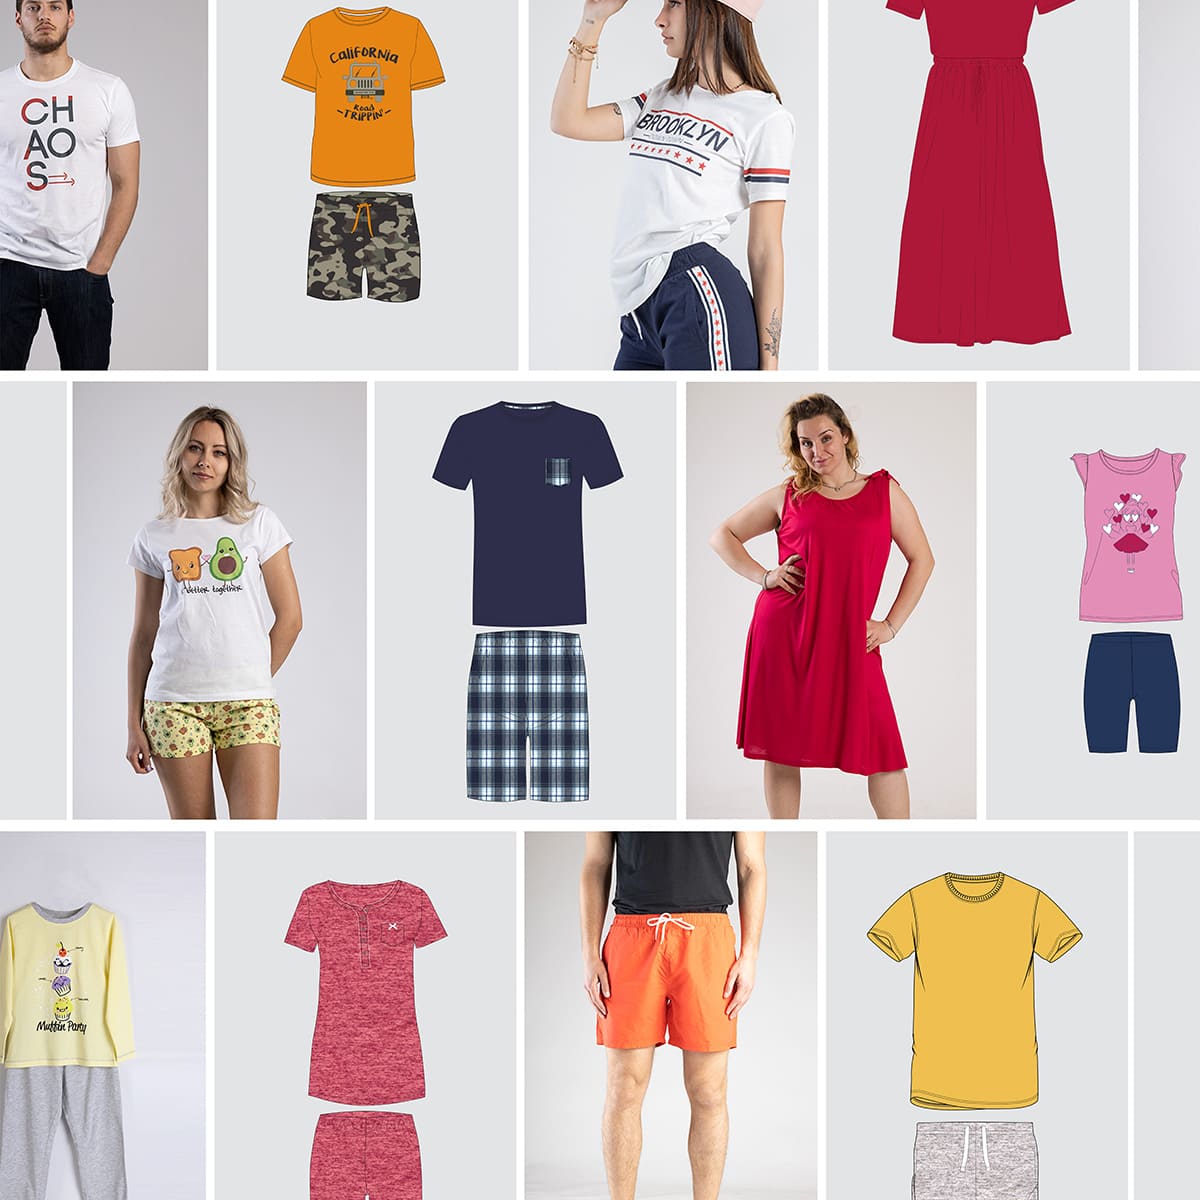 instyle srl Collezioni home page - Produzione e importazione abbigliamento